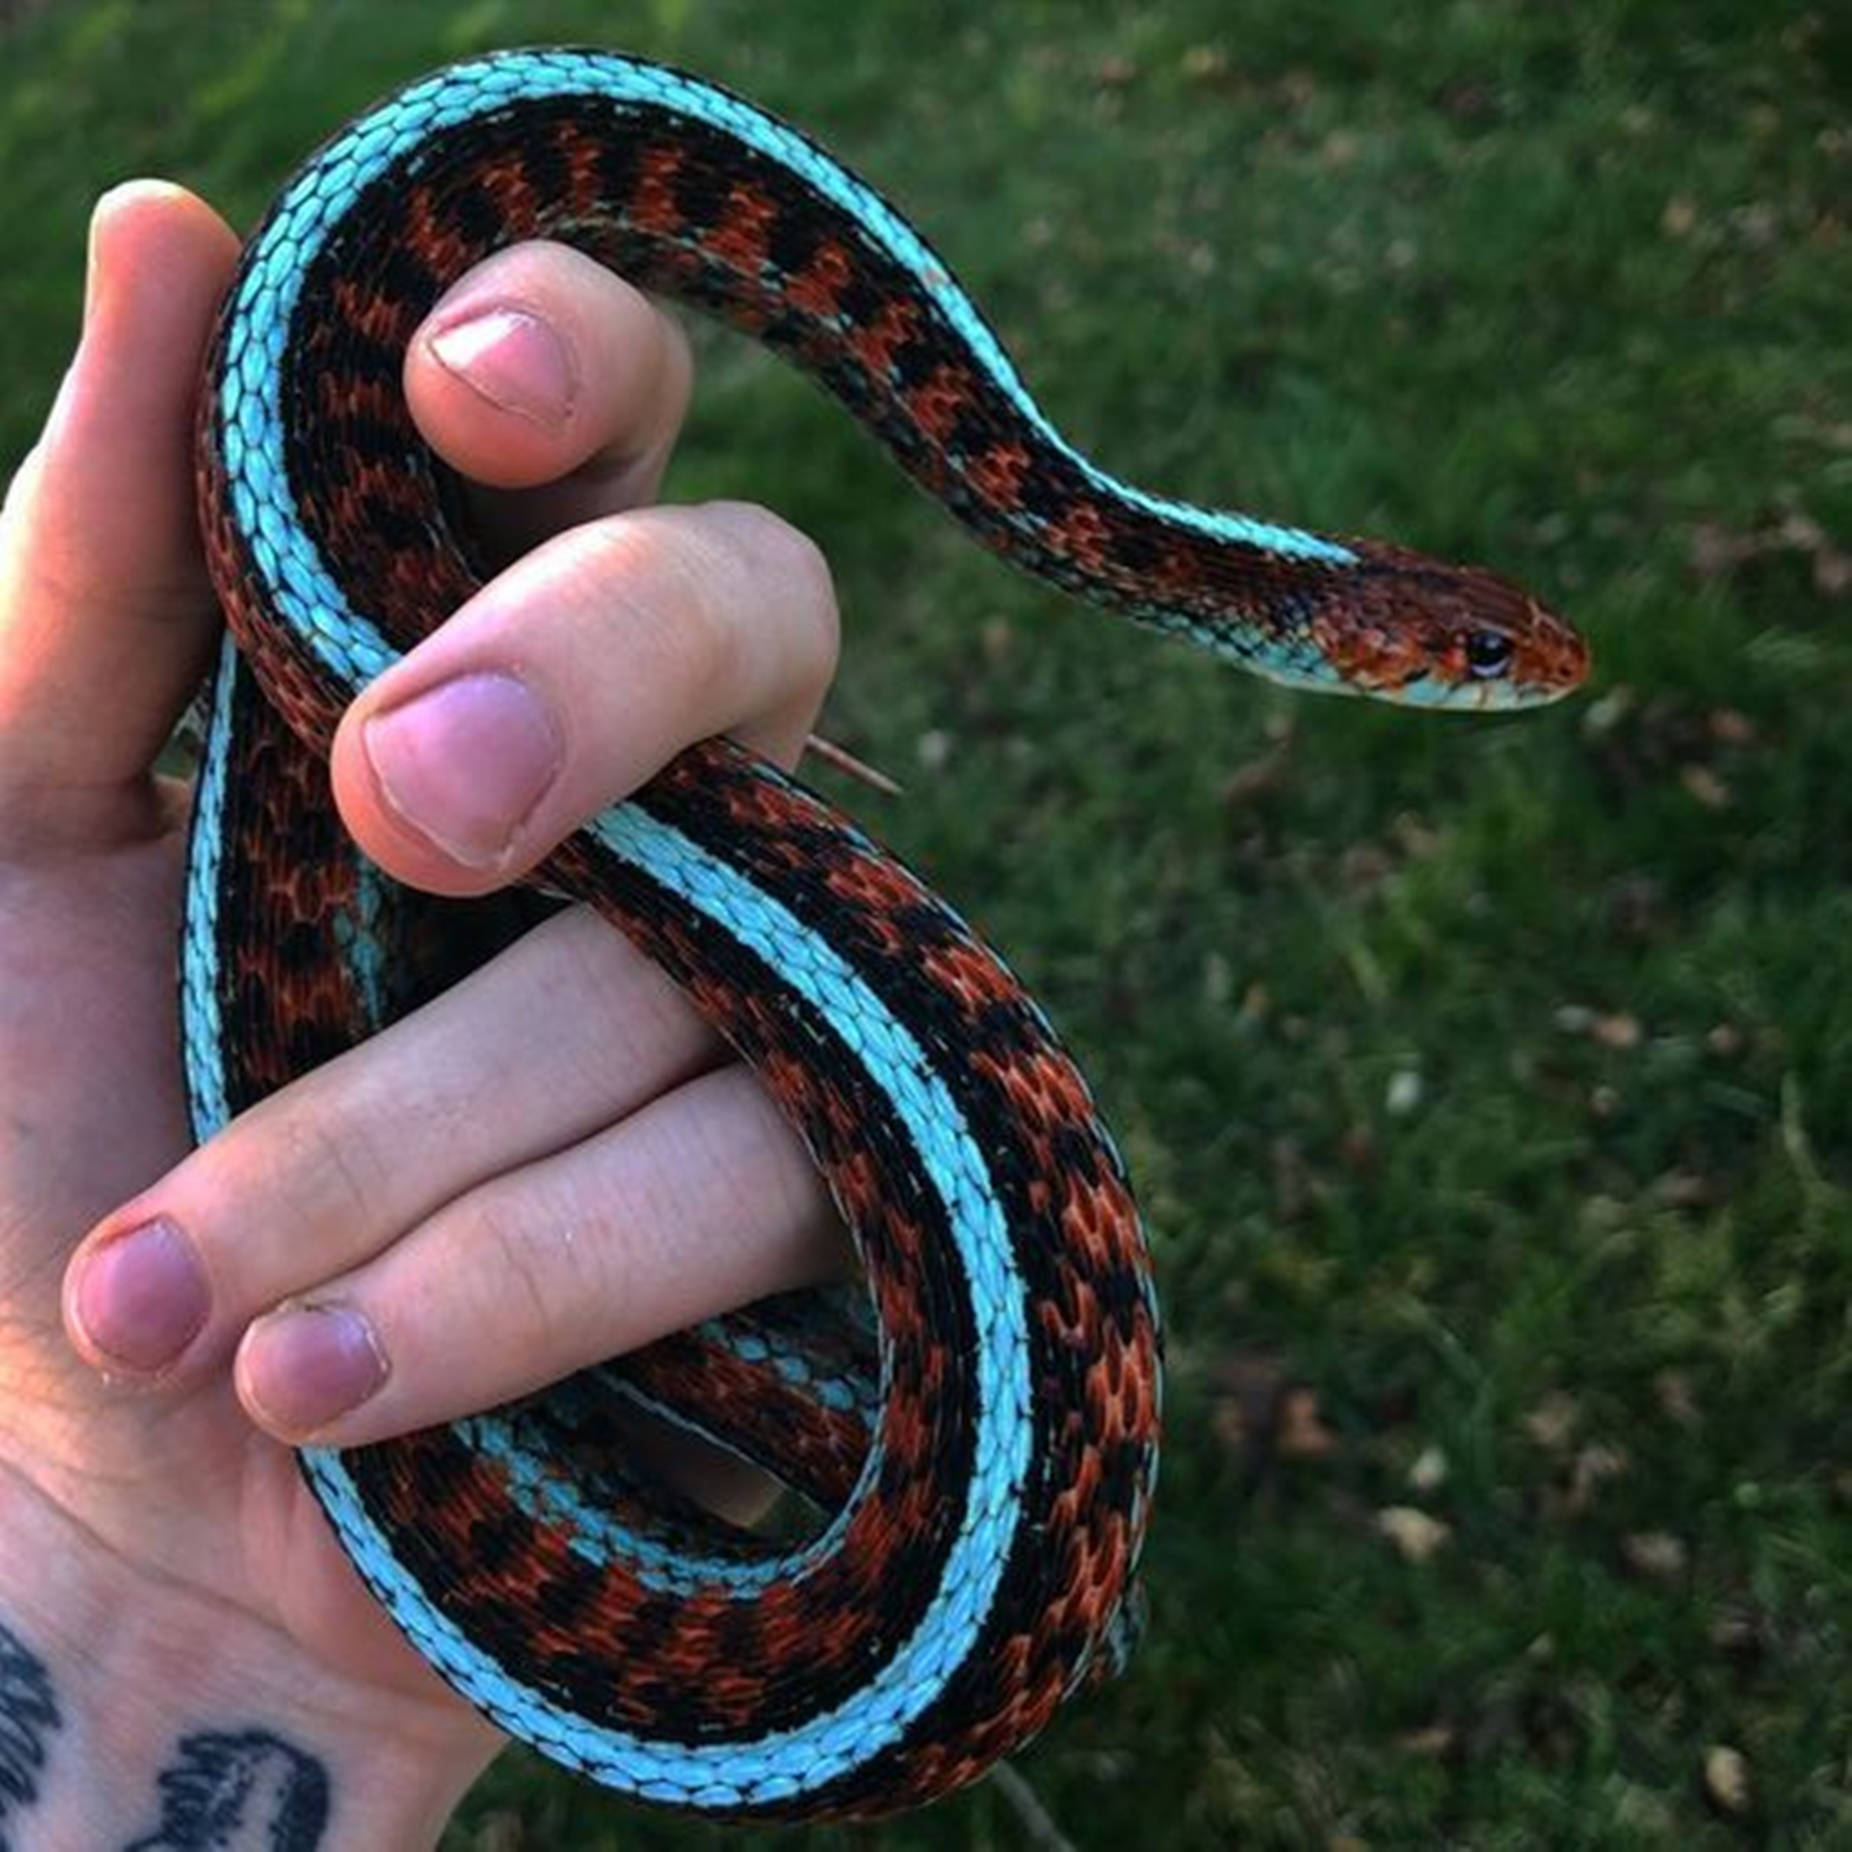 Vibrant Neon Blue California Garter Snake Wallpaper